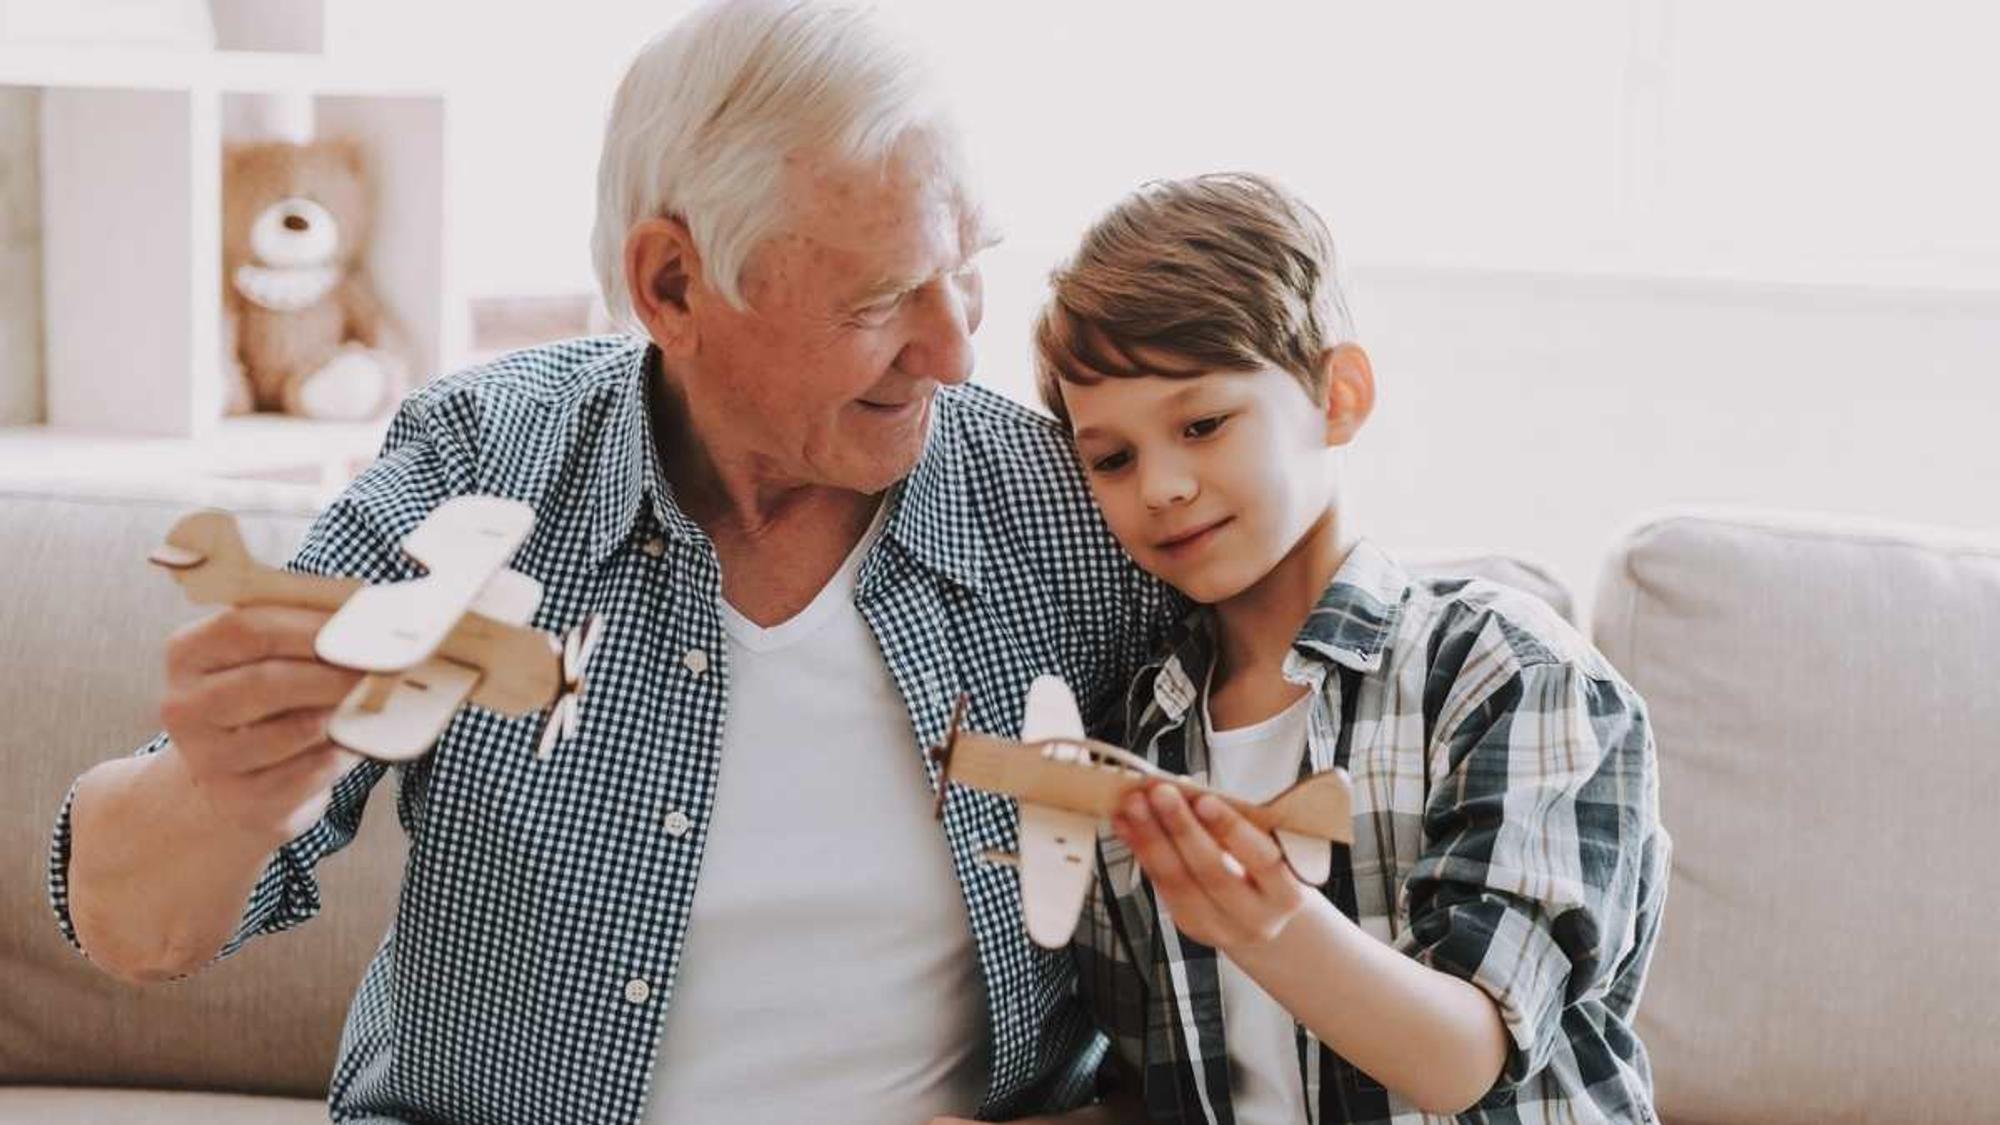 Symbolbild: Opa spielt mit Enkel